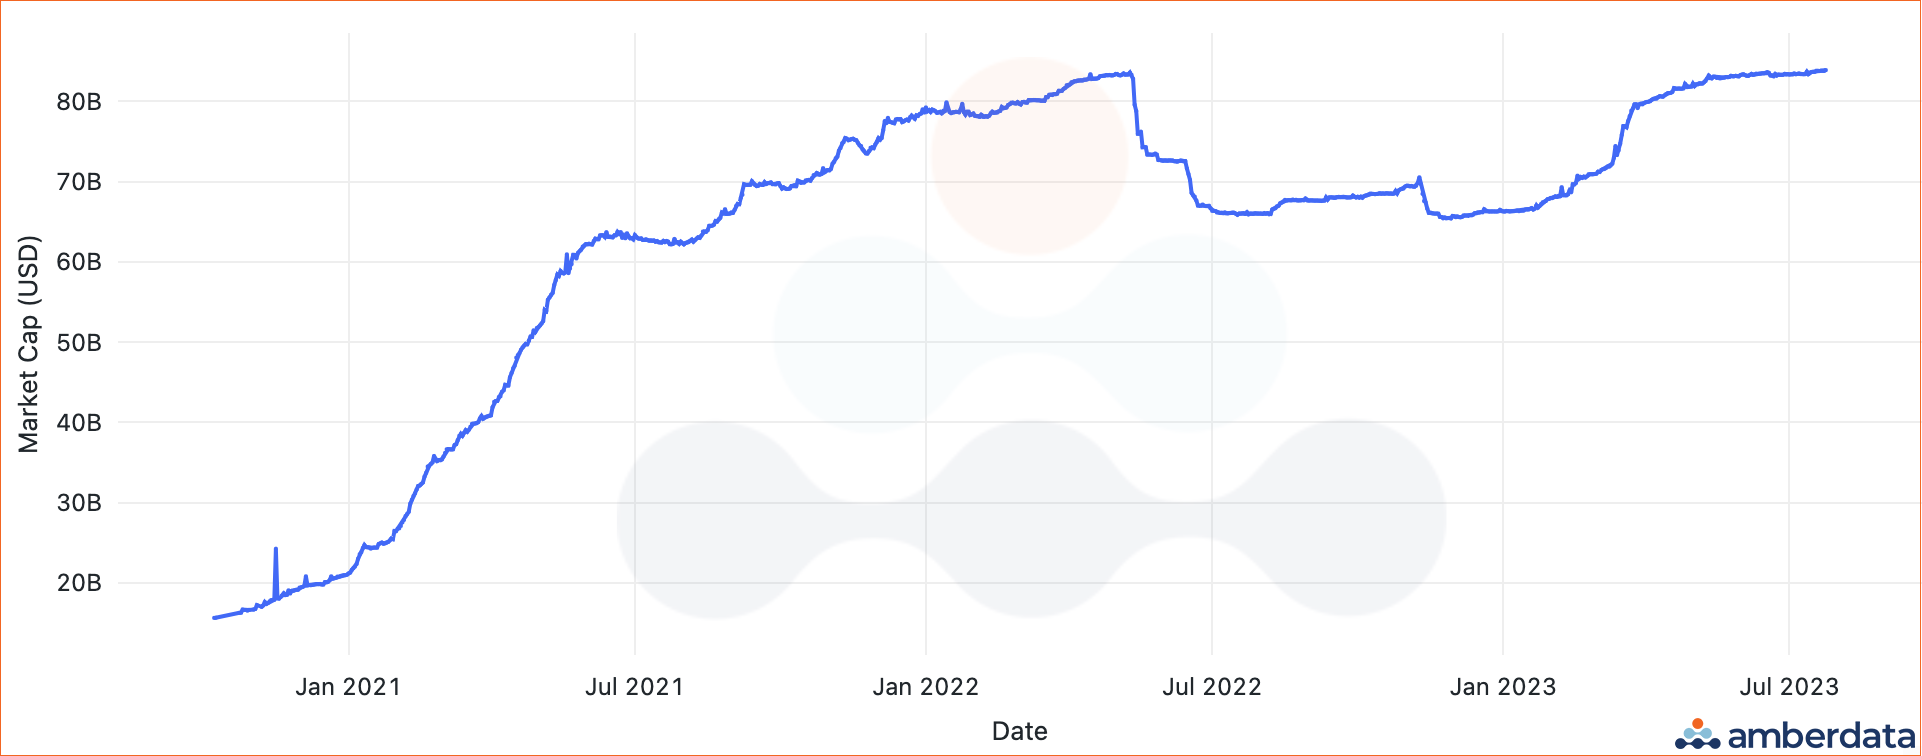 Amberdata API USDT market cap since October 2020